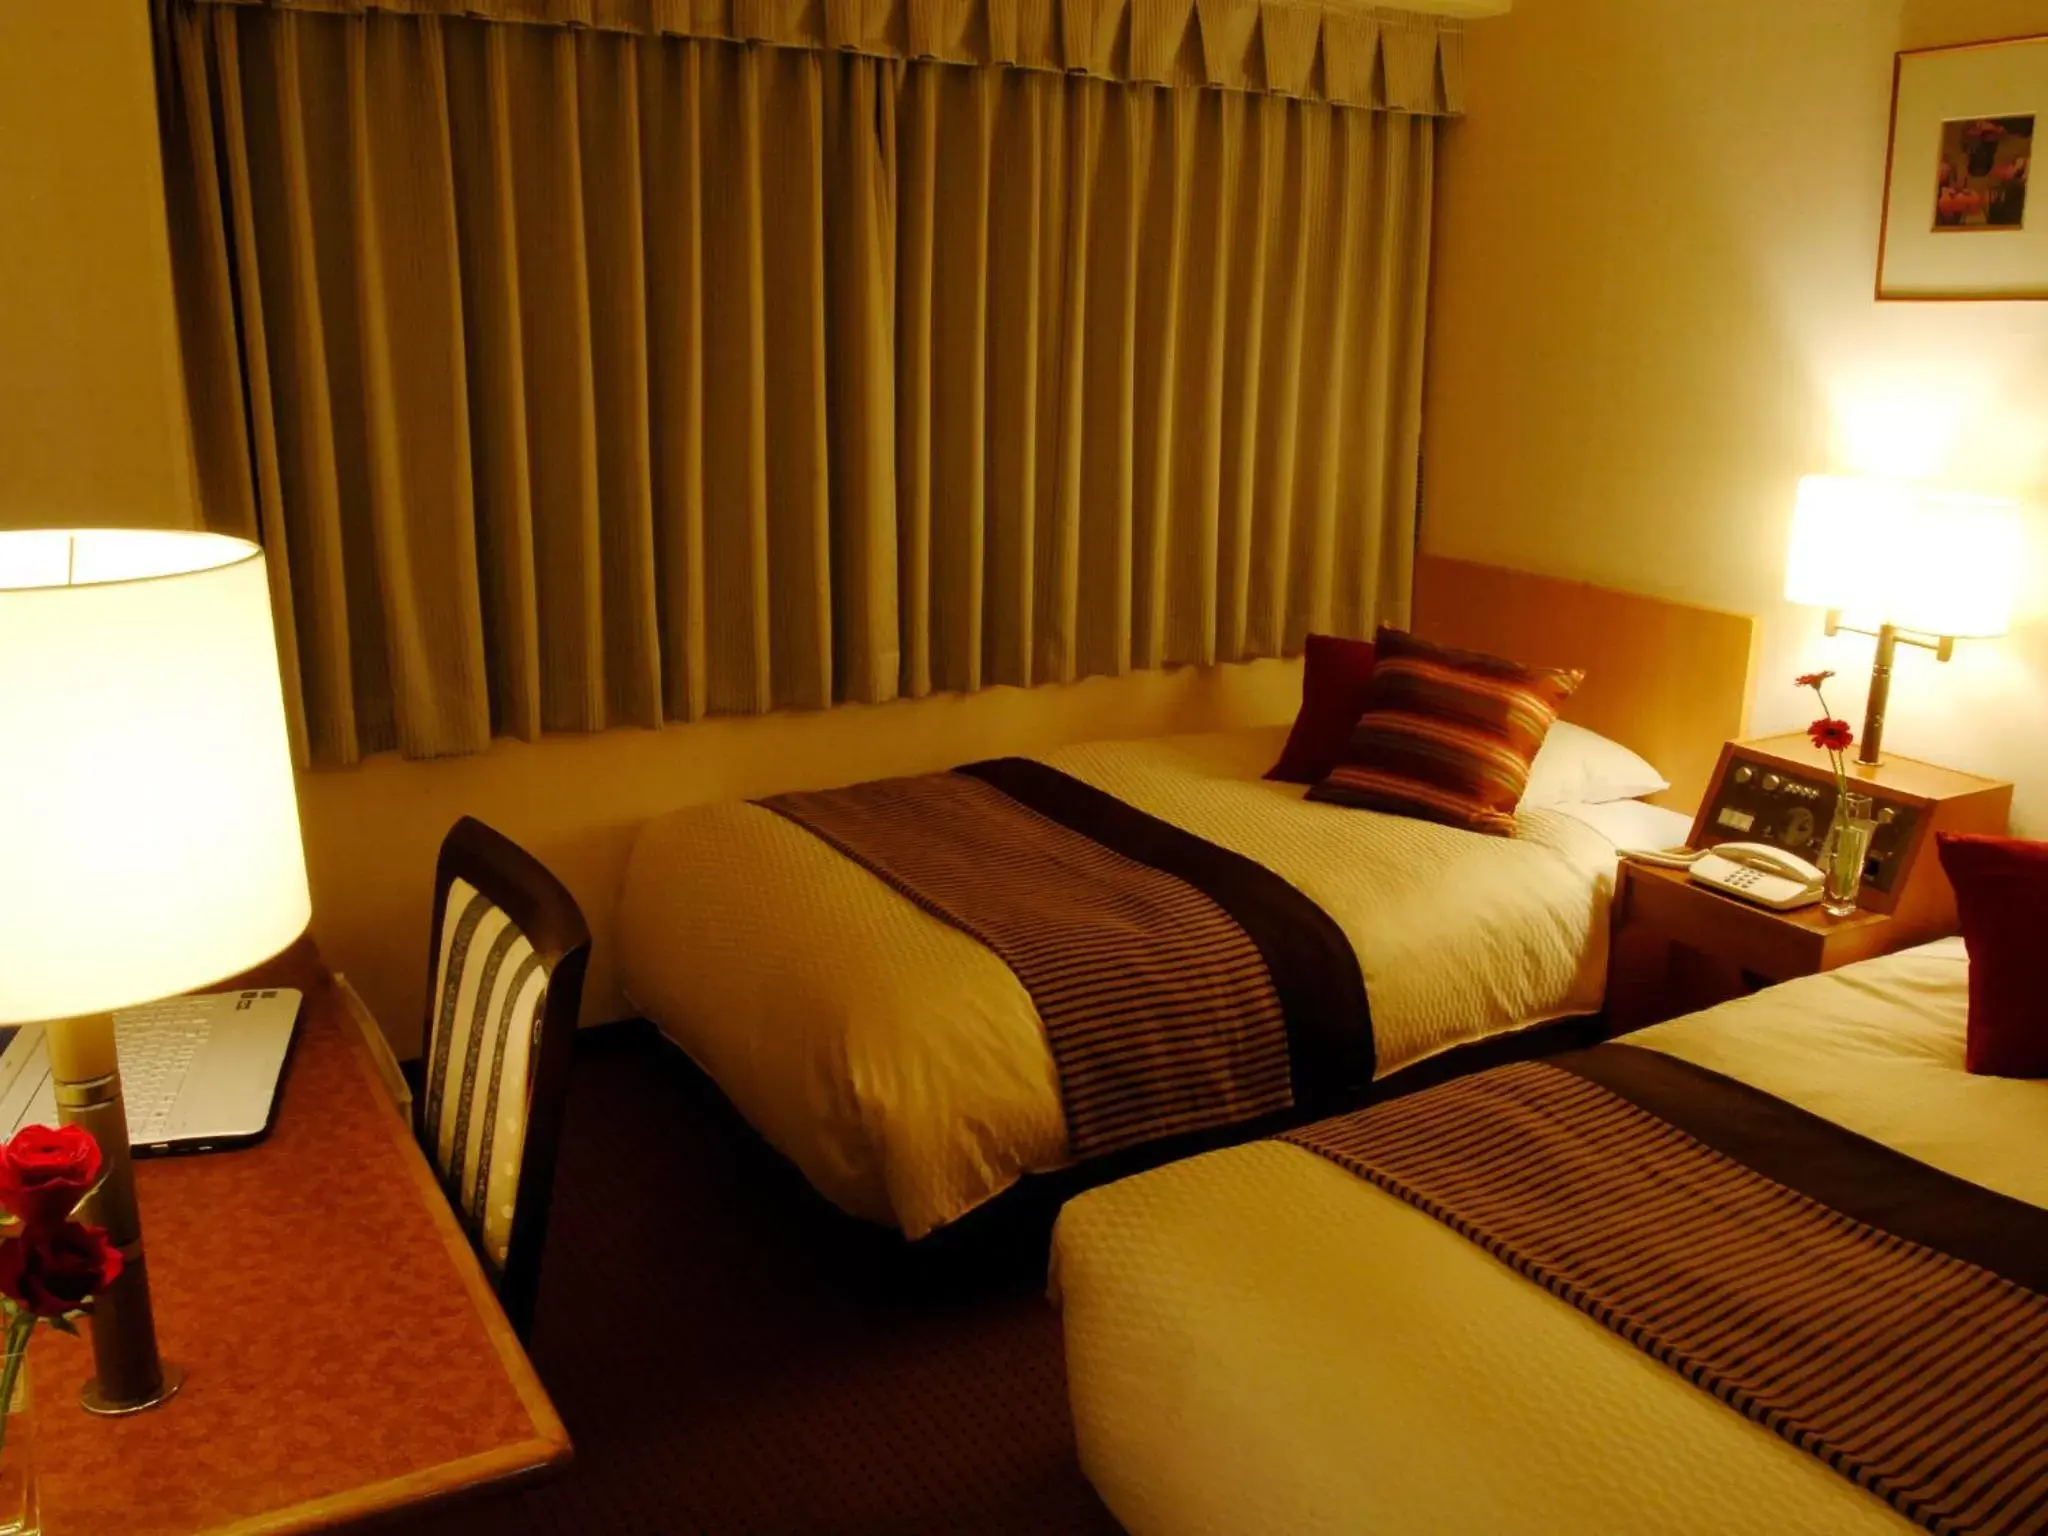 Bed in Central Hotel Yokosuka